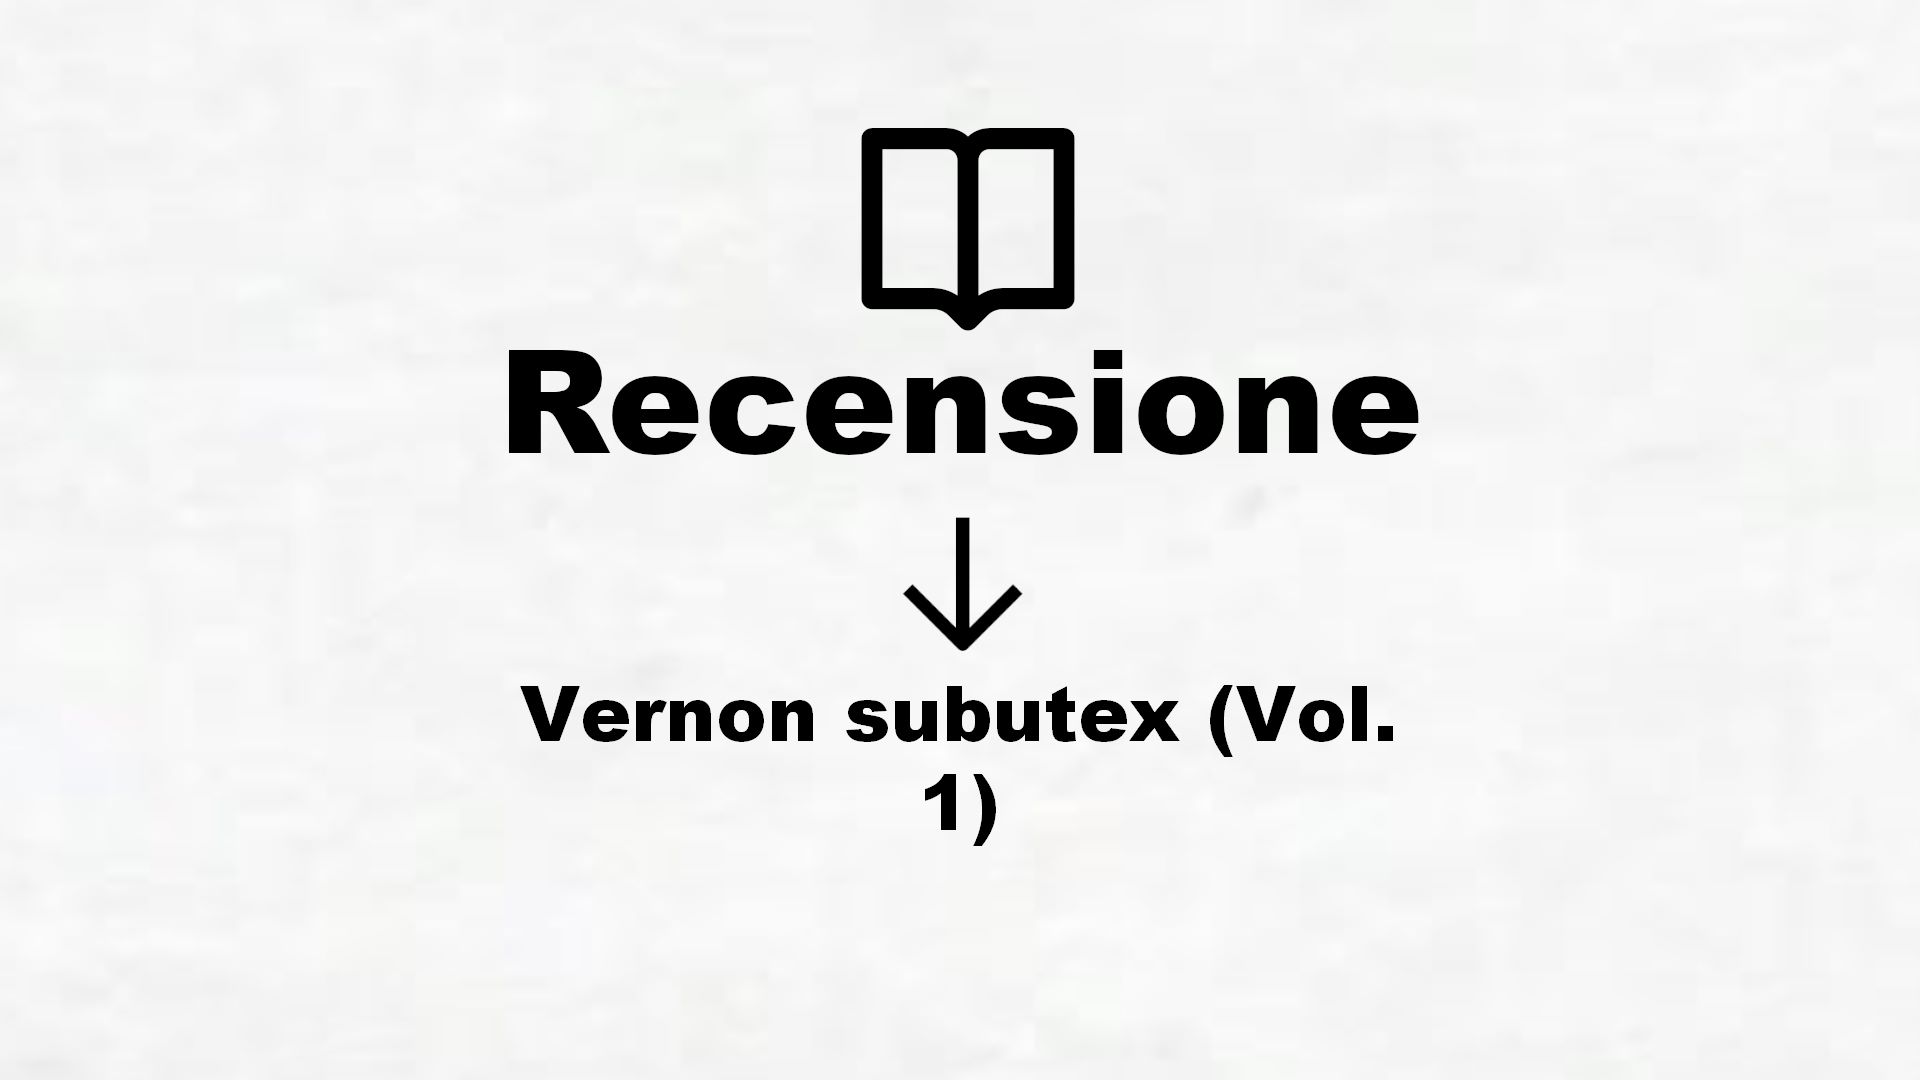 Vernon subutex (Vol. 1) – Recensione Libro